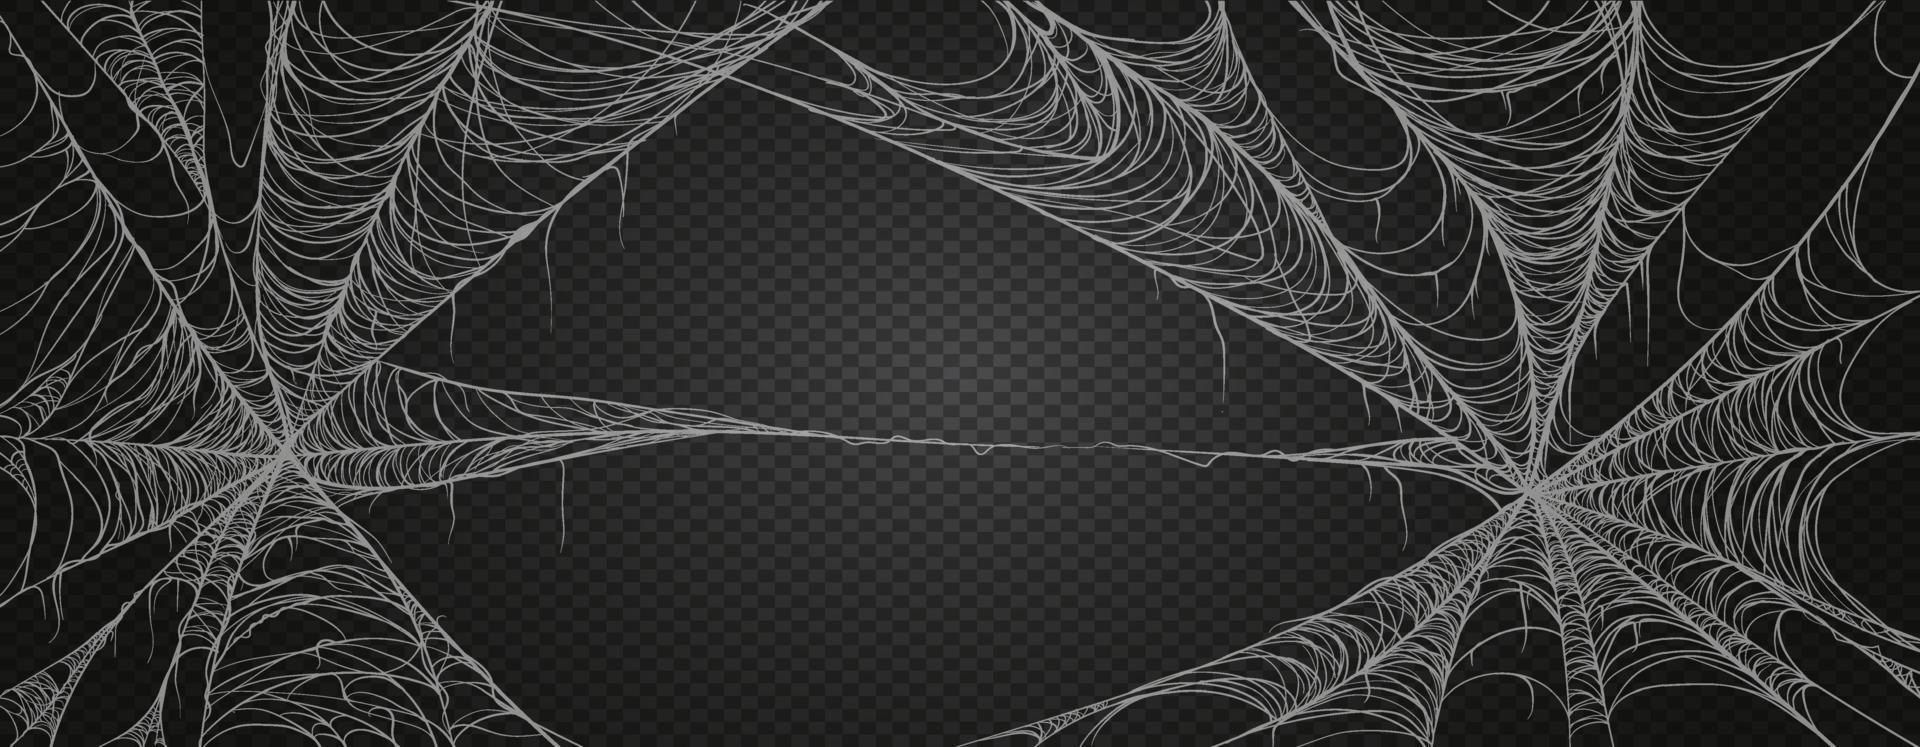 Spinnennetz für Halloween, gruselig, gruselig, Horror Dekor. Spinnennetz Realismus gesetzt. isoliert auf schwarzem Hintergrund. vektor